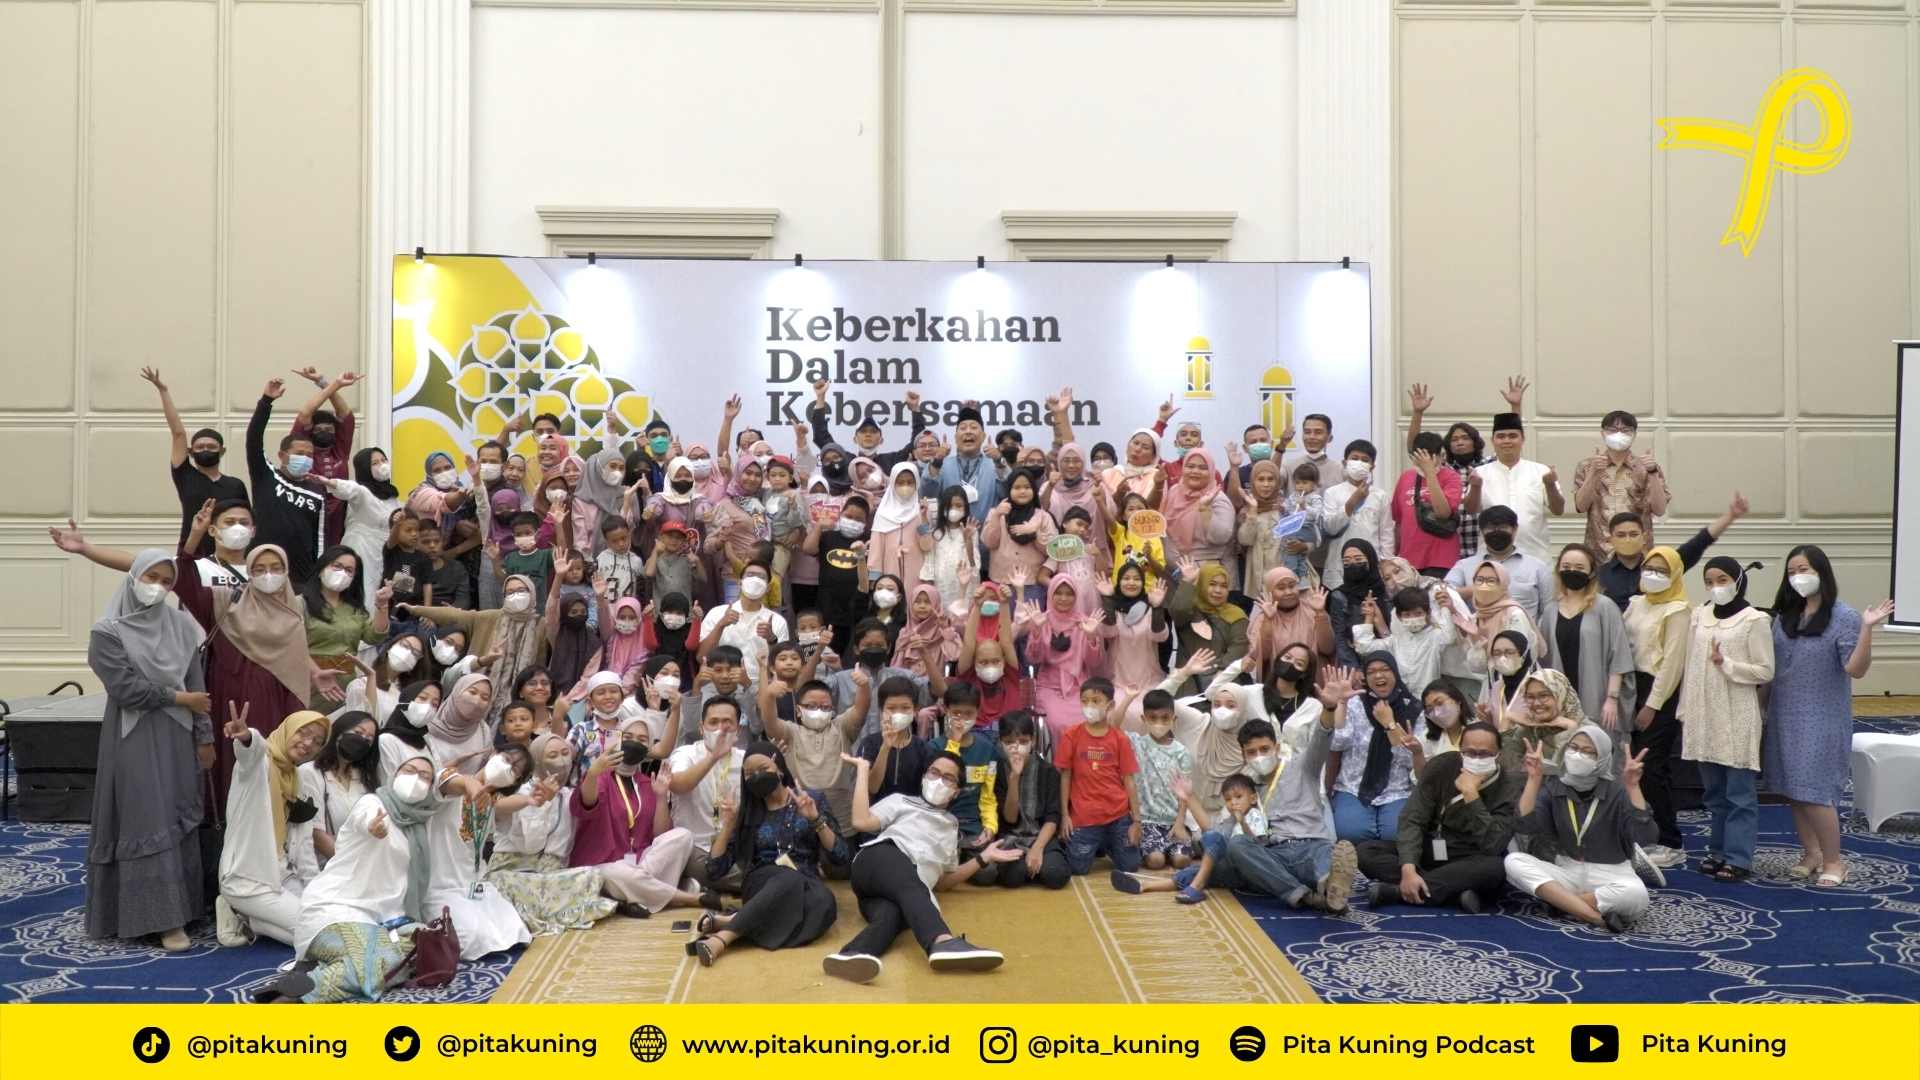 Keberkahan dalam Kebersamaan Buka Puasa Bersama Pita Kuning Jakarta Bersama Pakdhe Indro